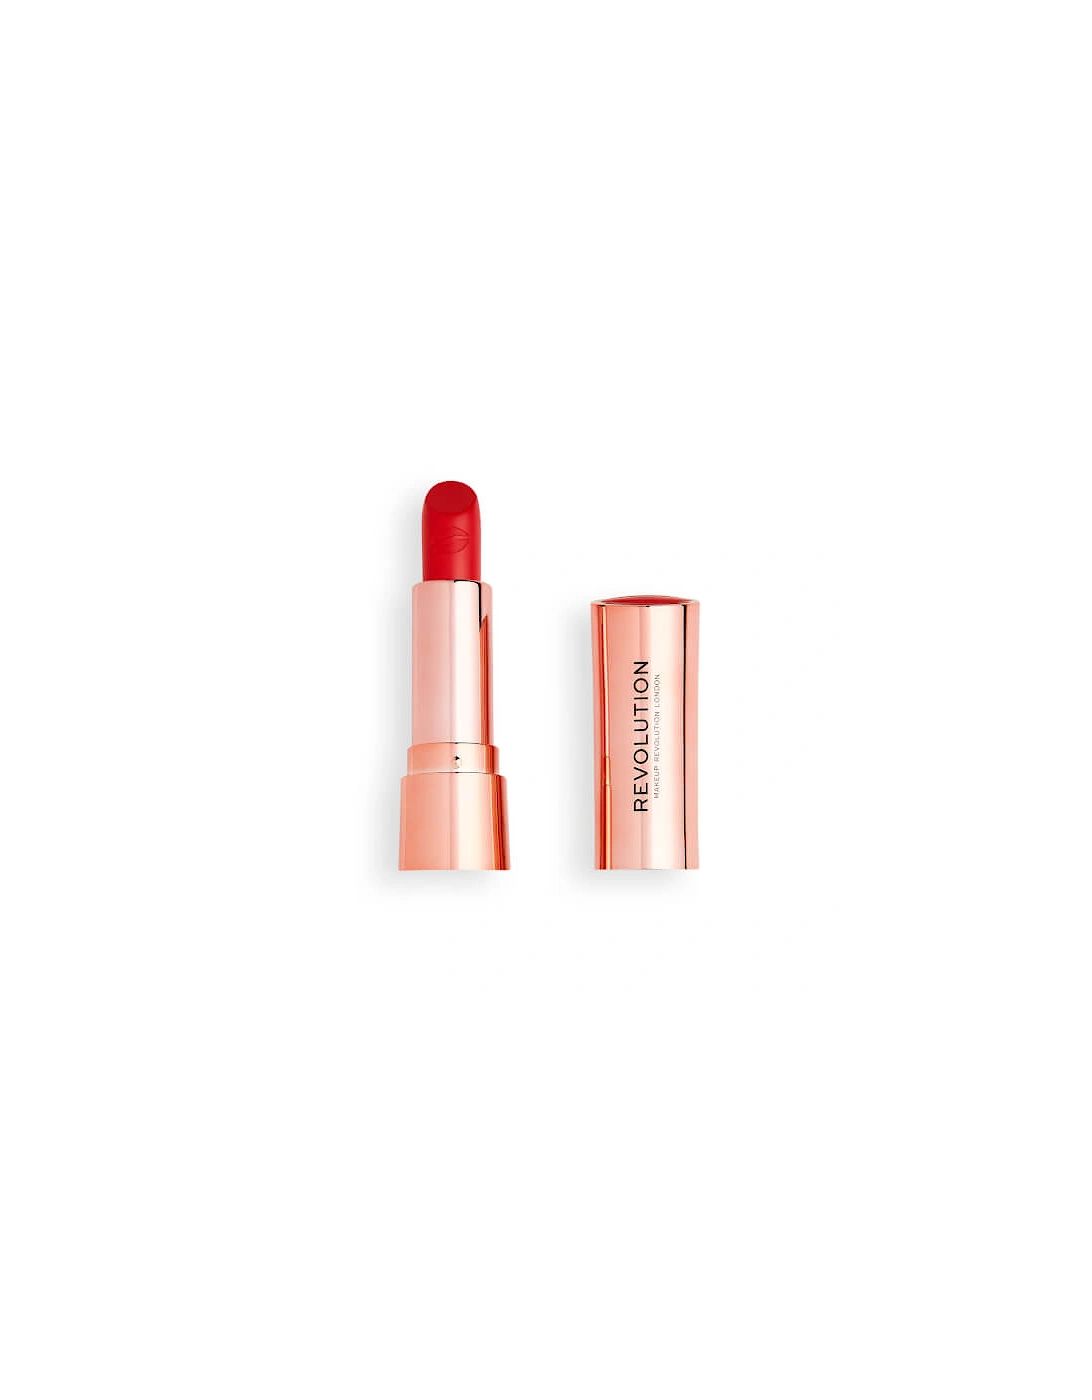 Makeup Satin Kiss Lipstick - Decadence, 2 of 1